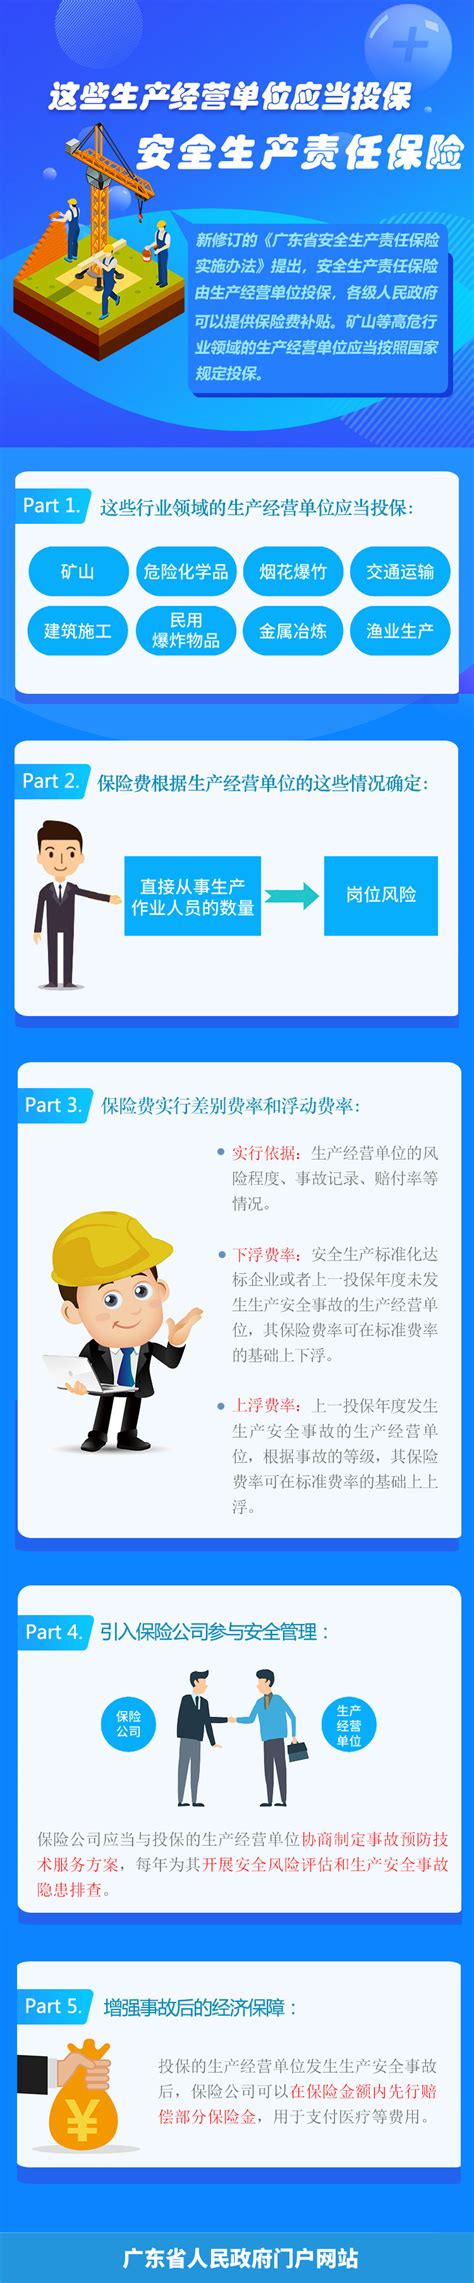 广东省安全生产责任保险实施方案